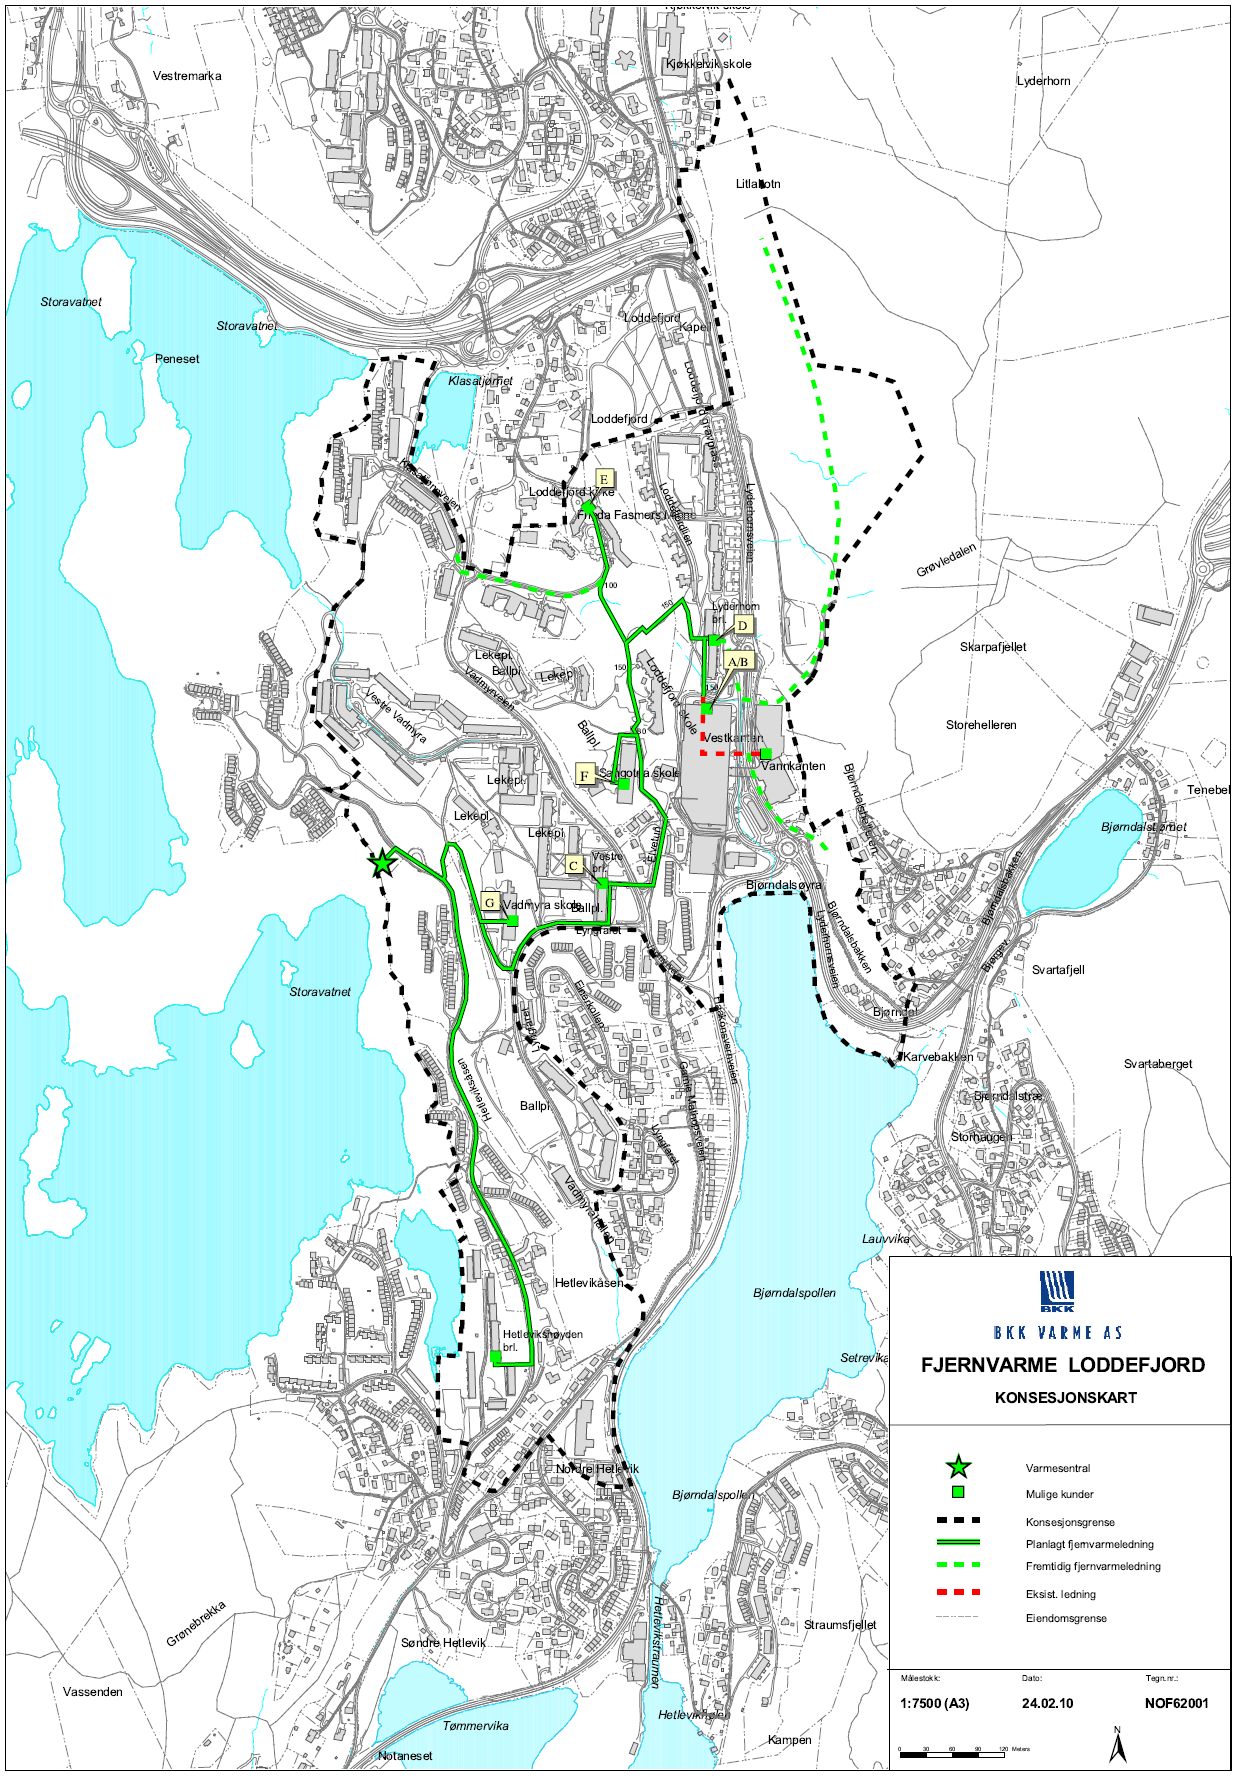 Loddefjord BKK Varme fikk i 2010 konsesjon for fjernvarme i Loddefjord som omfatter områdene mellom Loddefjordveien, Vadmyrveien og Hetlevikåsen.